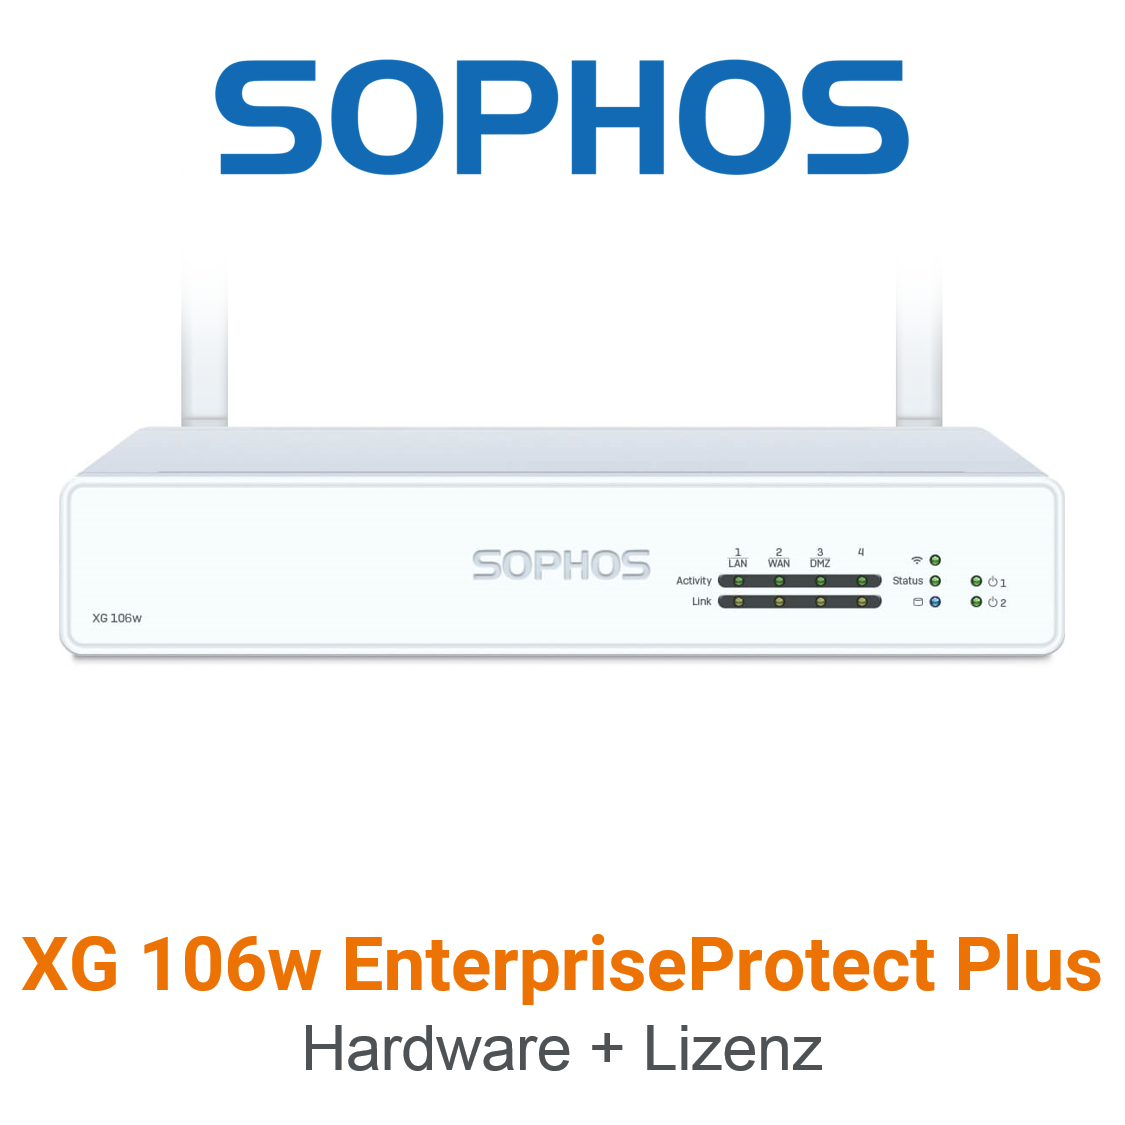 Sophos XG 106w EnterpriseProtect Plus Bundle (Hardware + Lizenz) (End of Sale/Life)